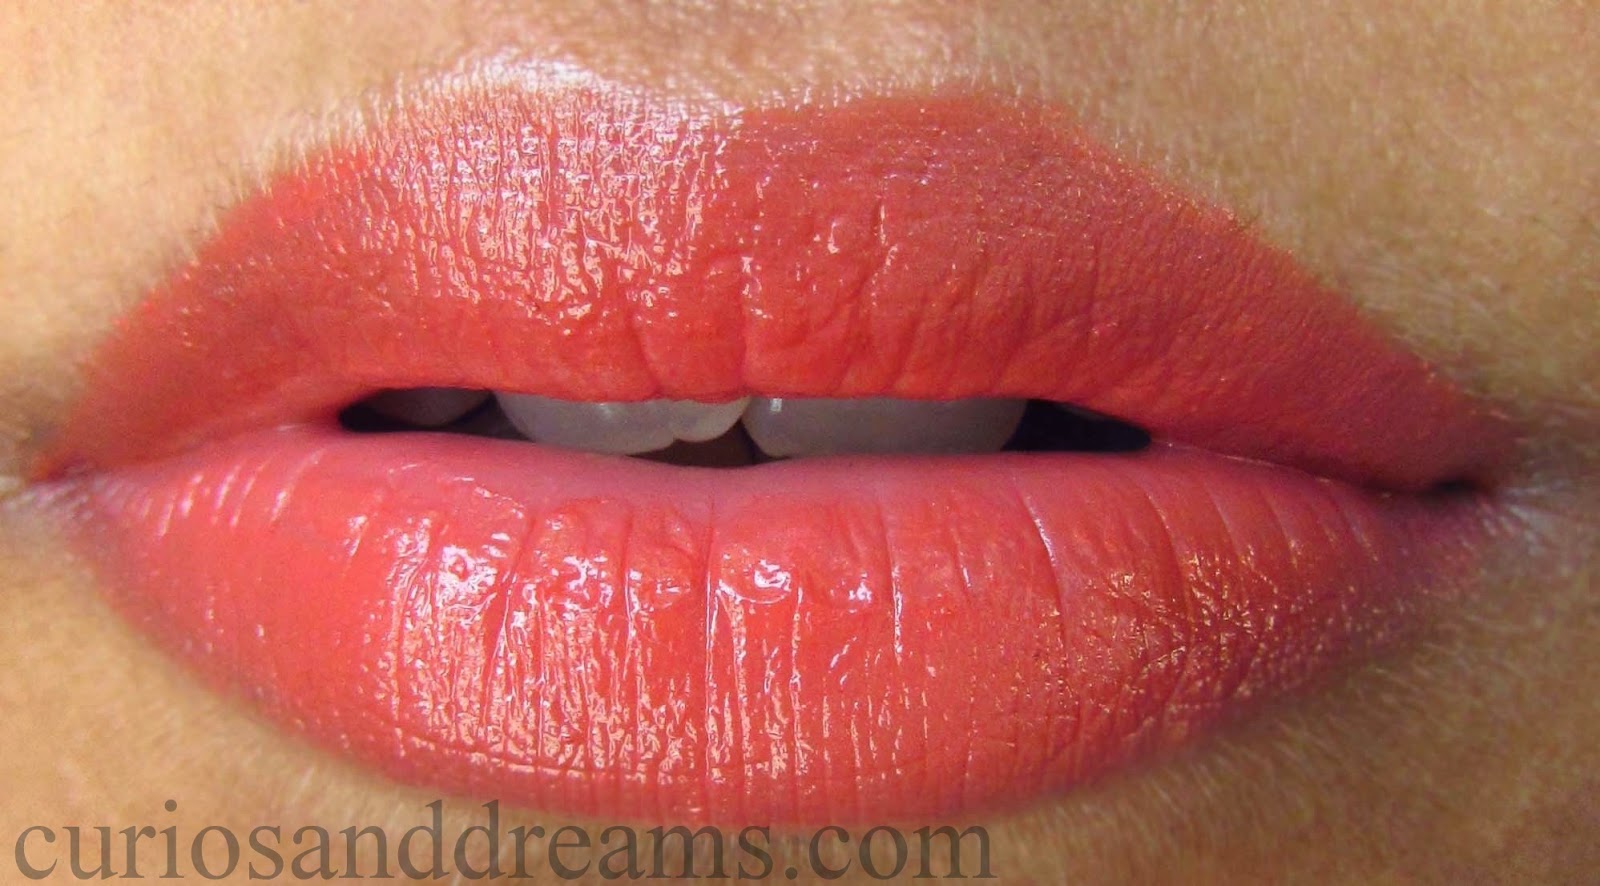 Colorbar Nude Coral lipstick, Colorbar Nude Coral lipstick review, Colorbar Nude Coral lipstick swatch